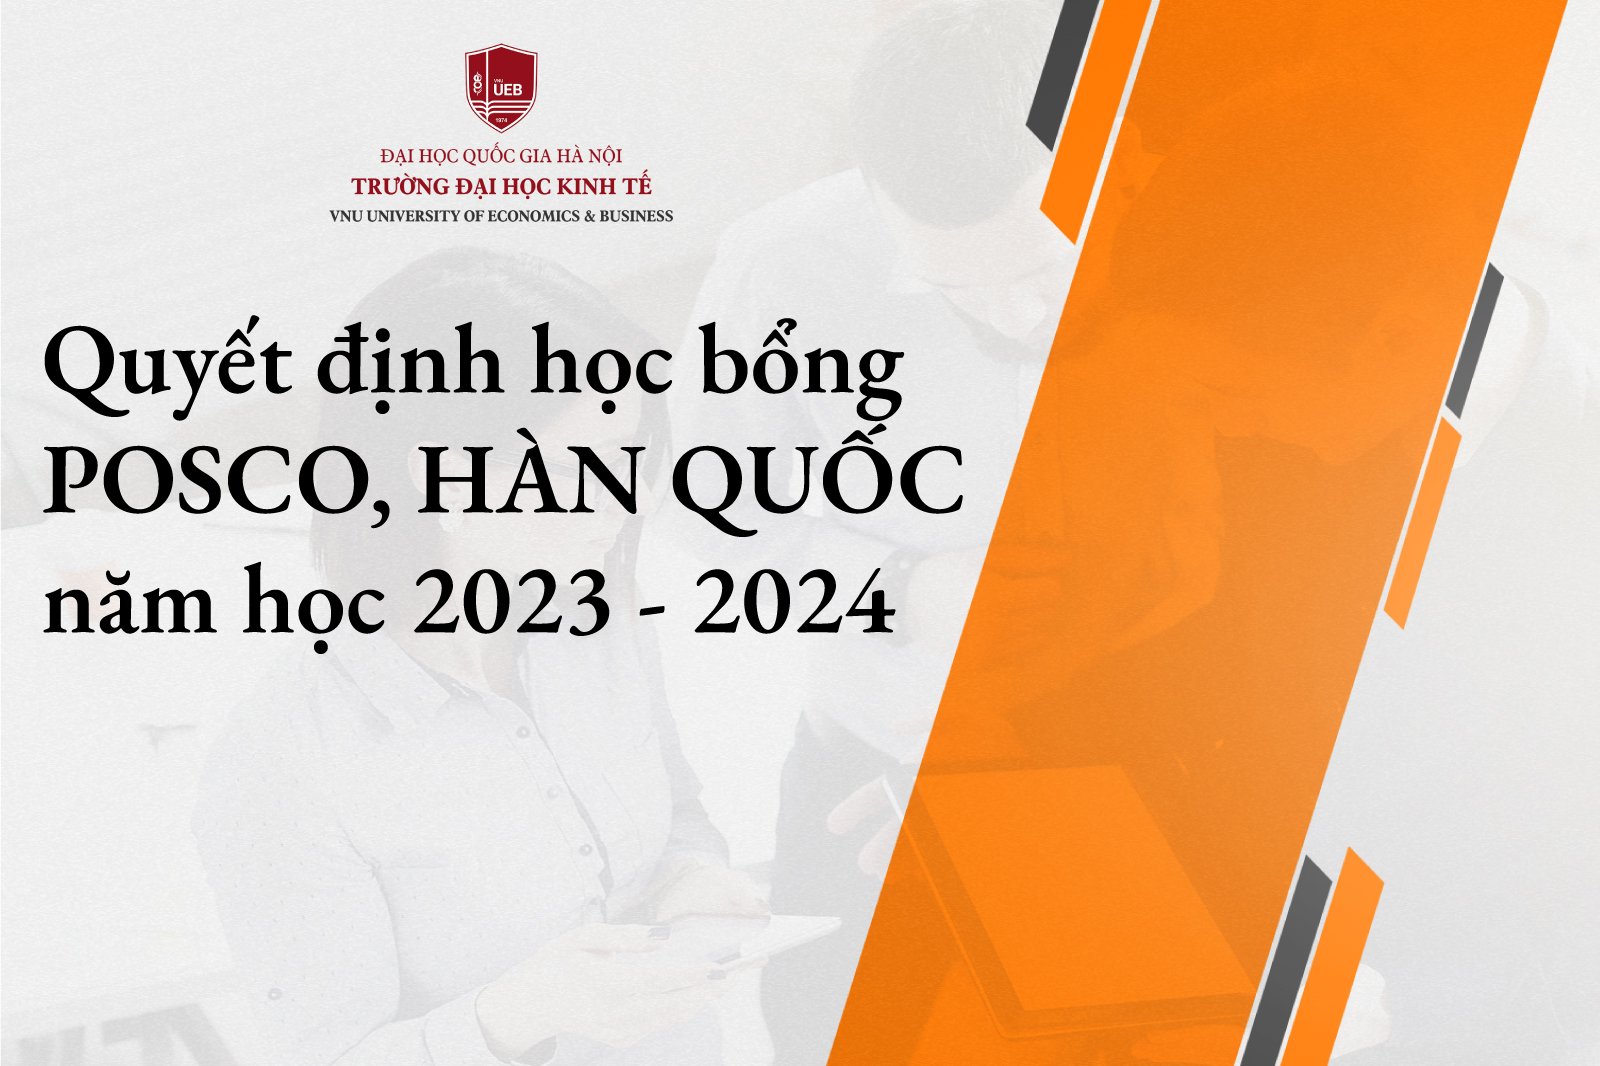 Quyết định trao học bổng của Quỹ học bổng Posco, Hàn Quốc năm học 2023-2024 